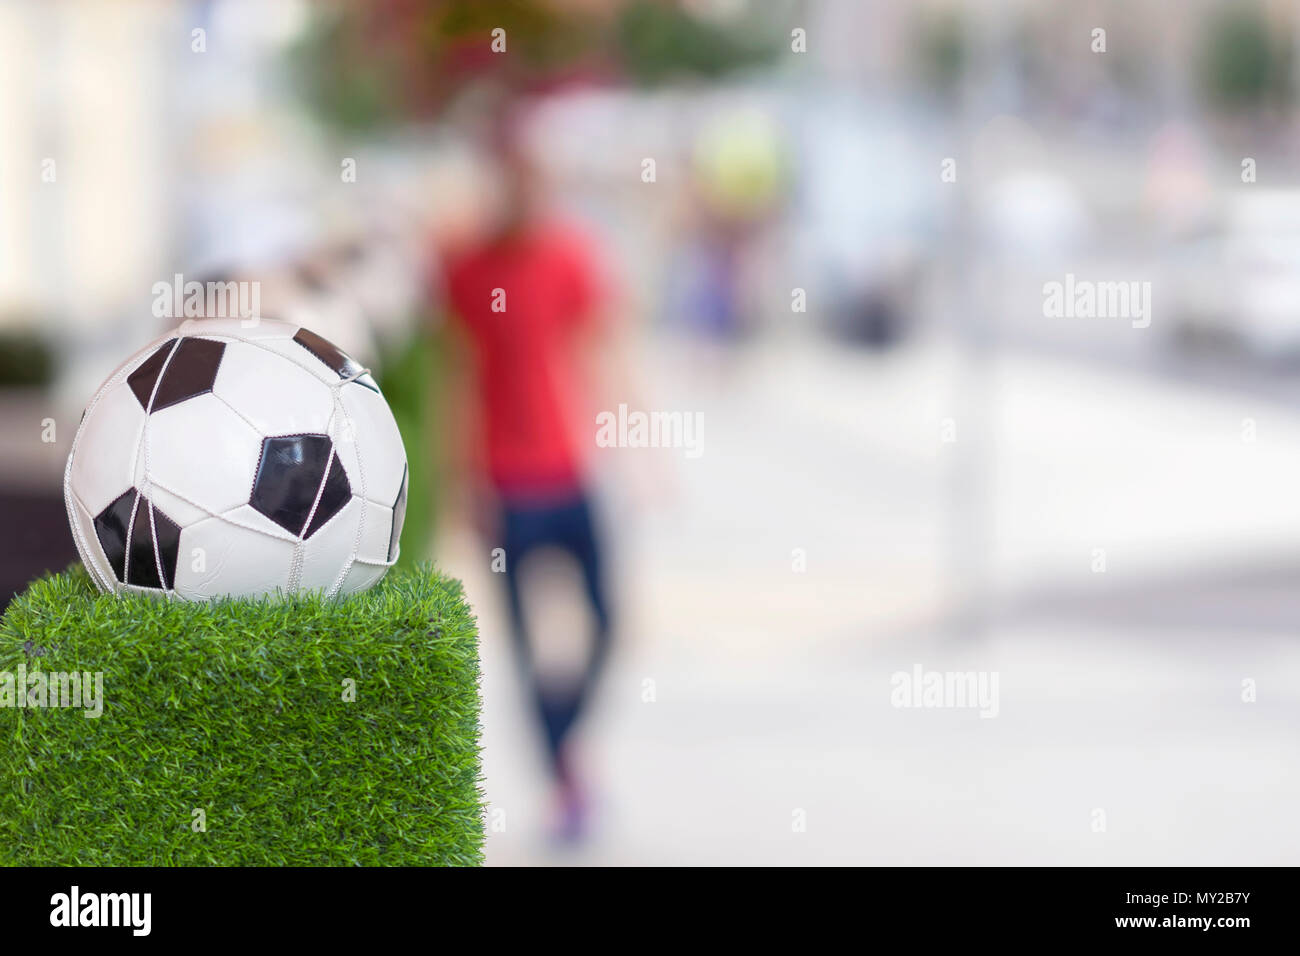 Stand de décoration sous la forme de la balle de football classique dans le filet sur l'herbe verte. Ornements des rues de la ville Banque D'Images